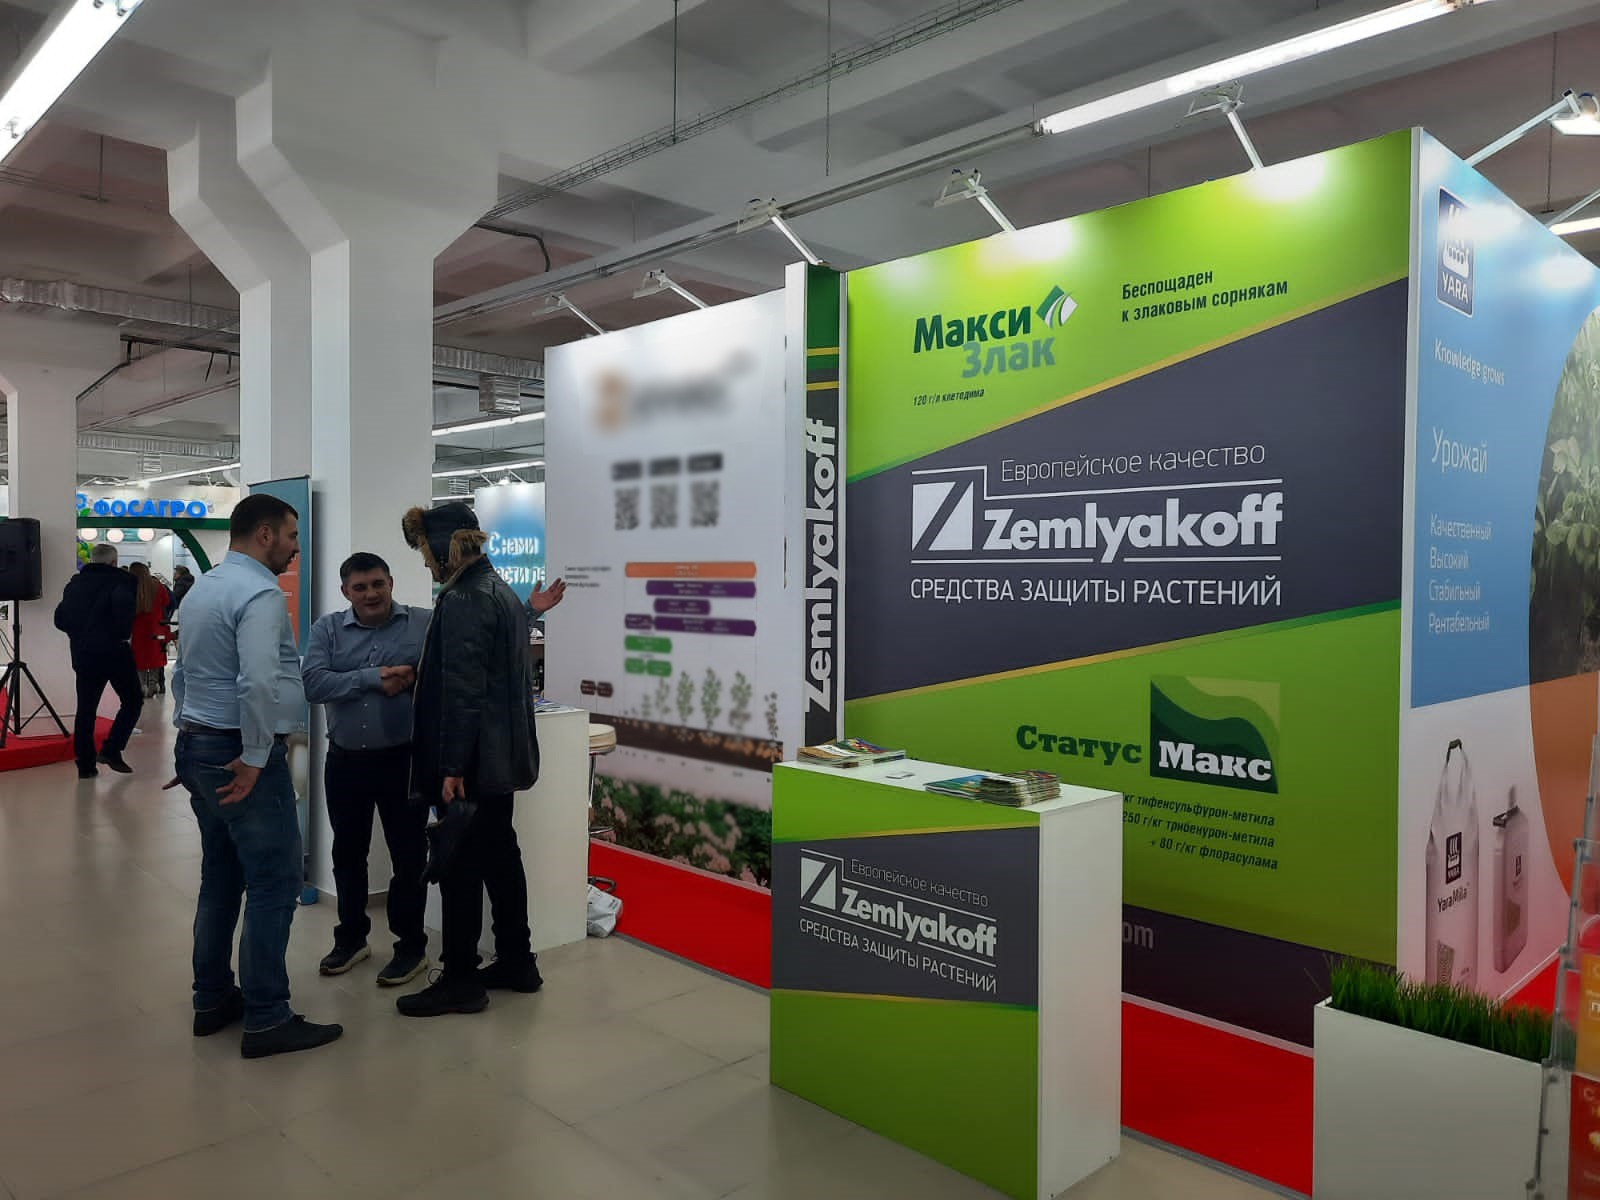 В Чебоксарах открылась Межрегиональная выставка «Картофель-2022»